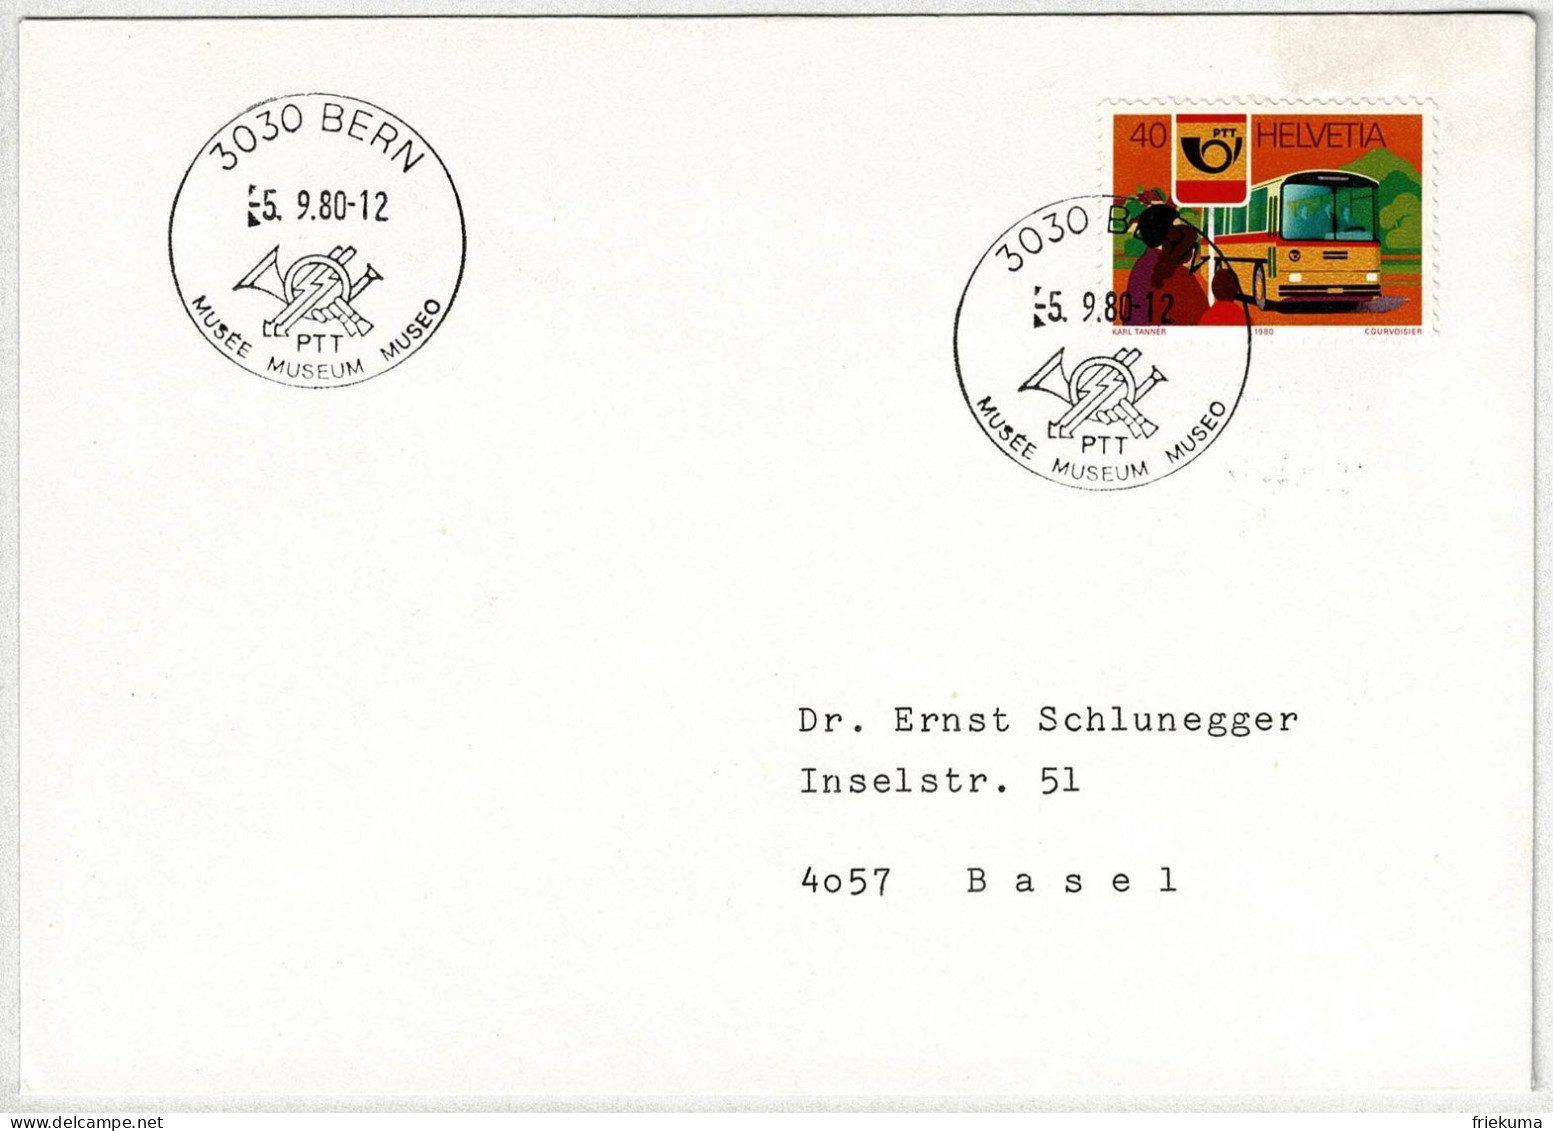 Schweiz / Helvetia 1980, Brief Museum PTT Bern - Basel, Postauto / Postbus Saurer - Bus